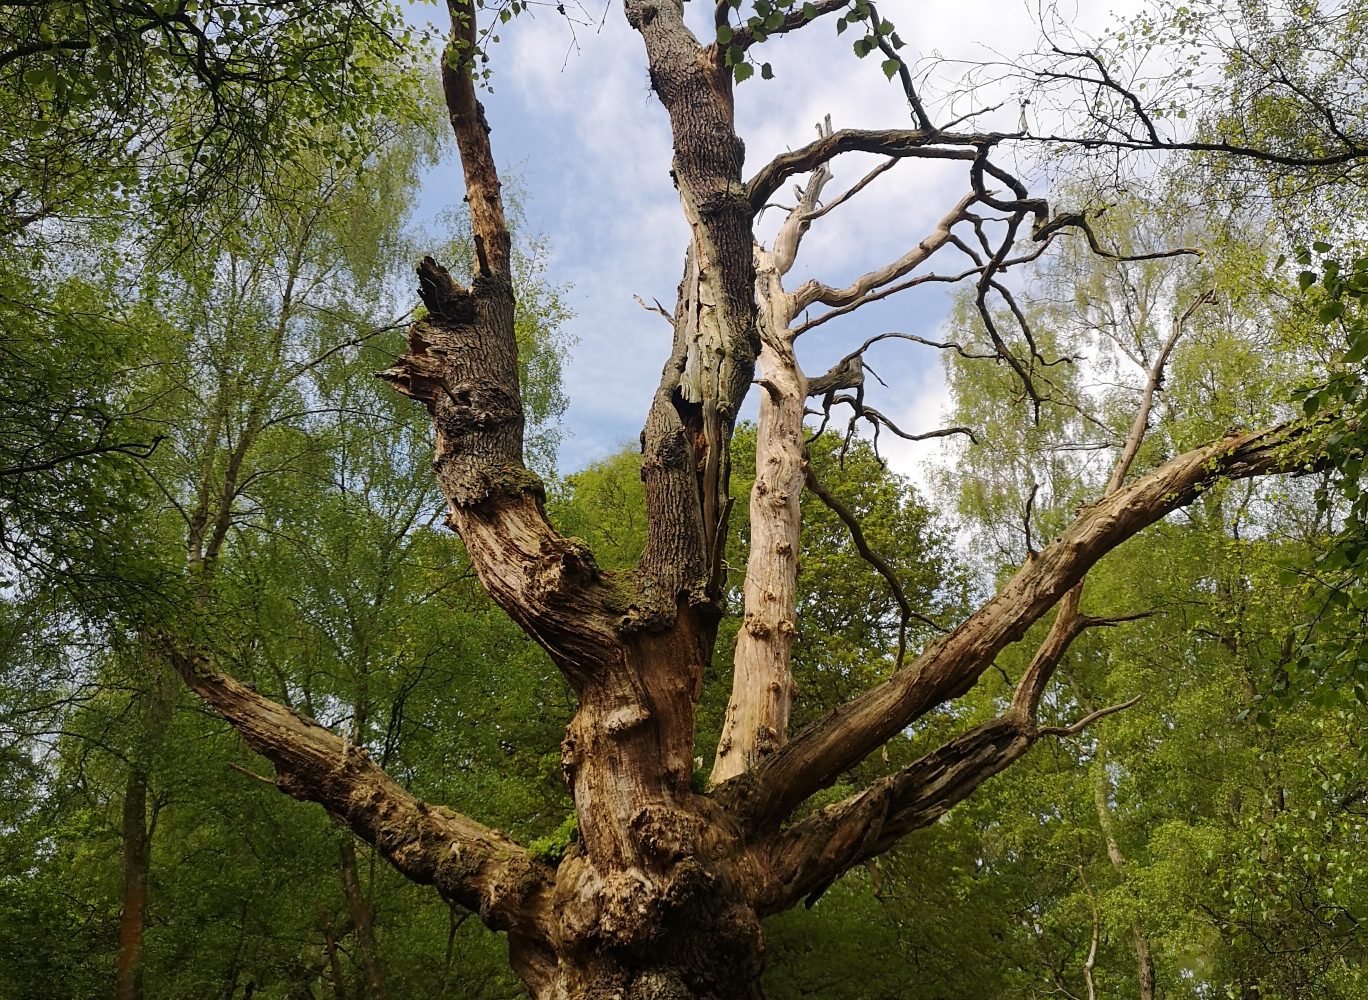 Ancient hulk of an oak tree